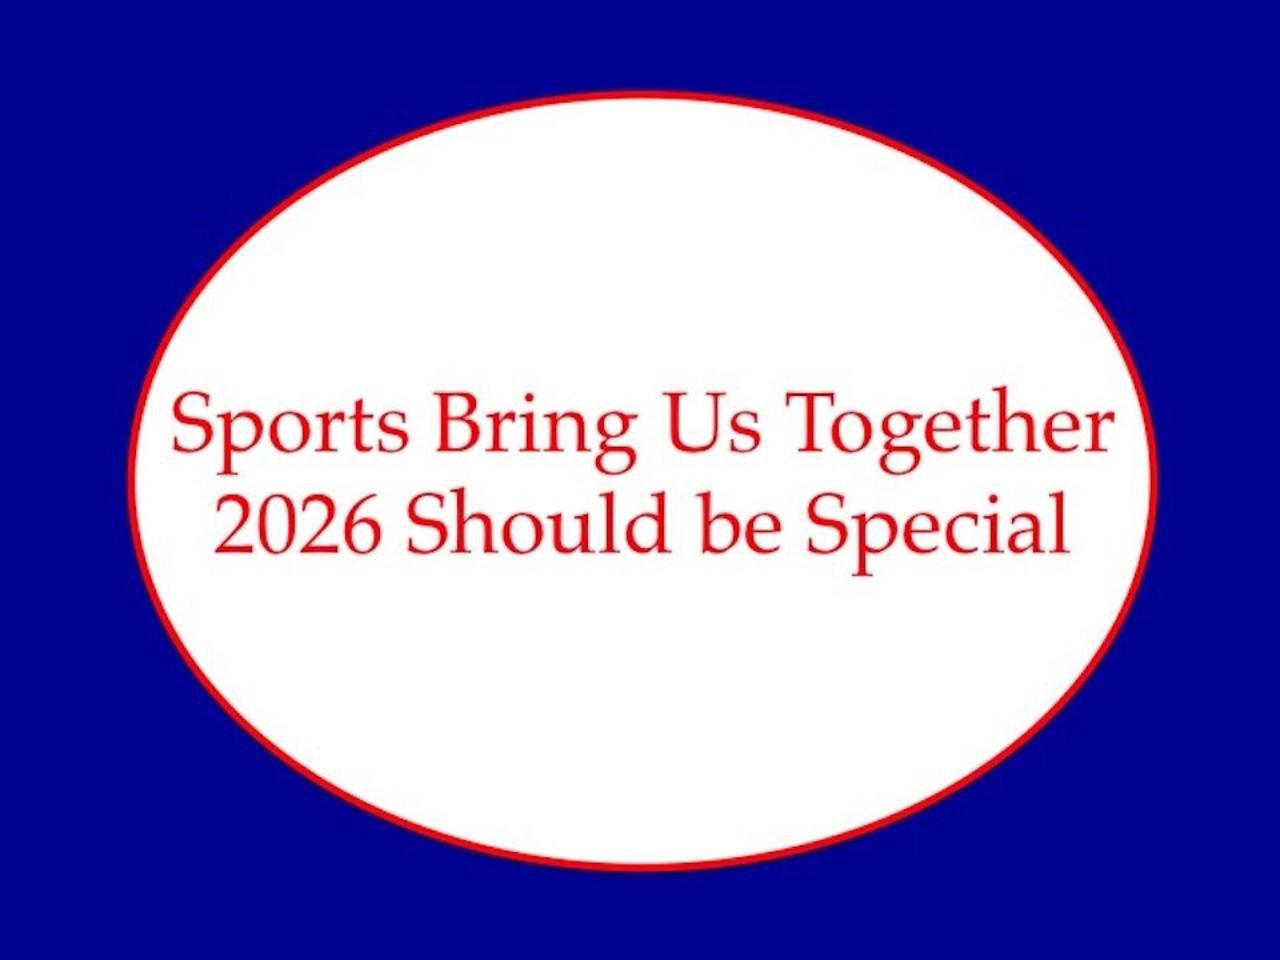 Sports Should Bring Us Together